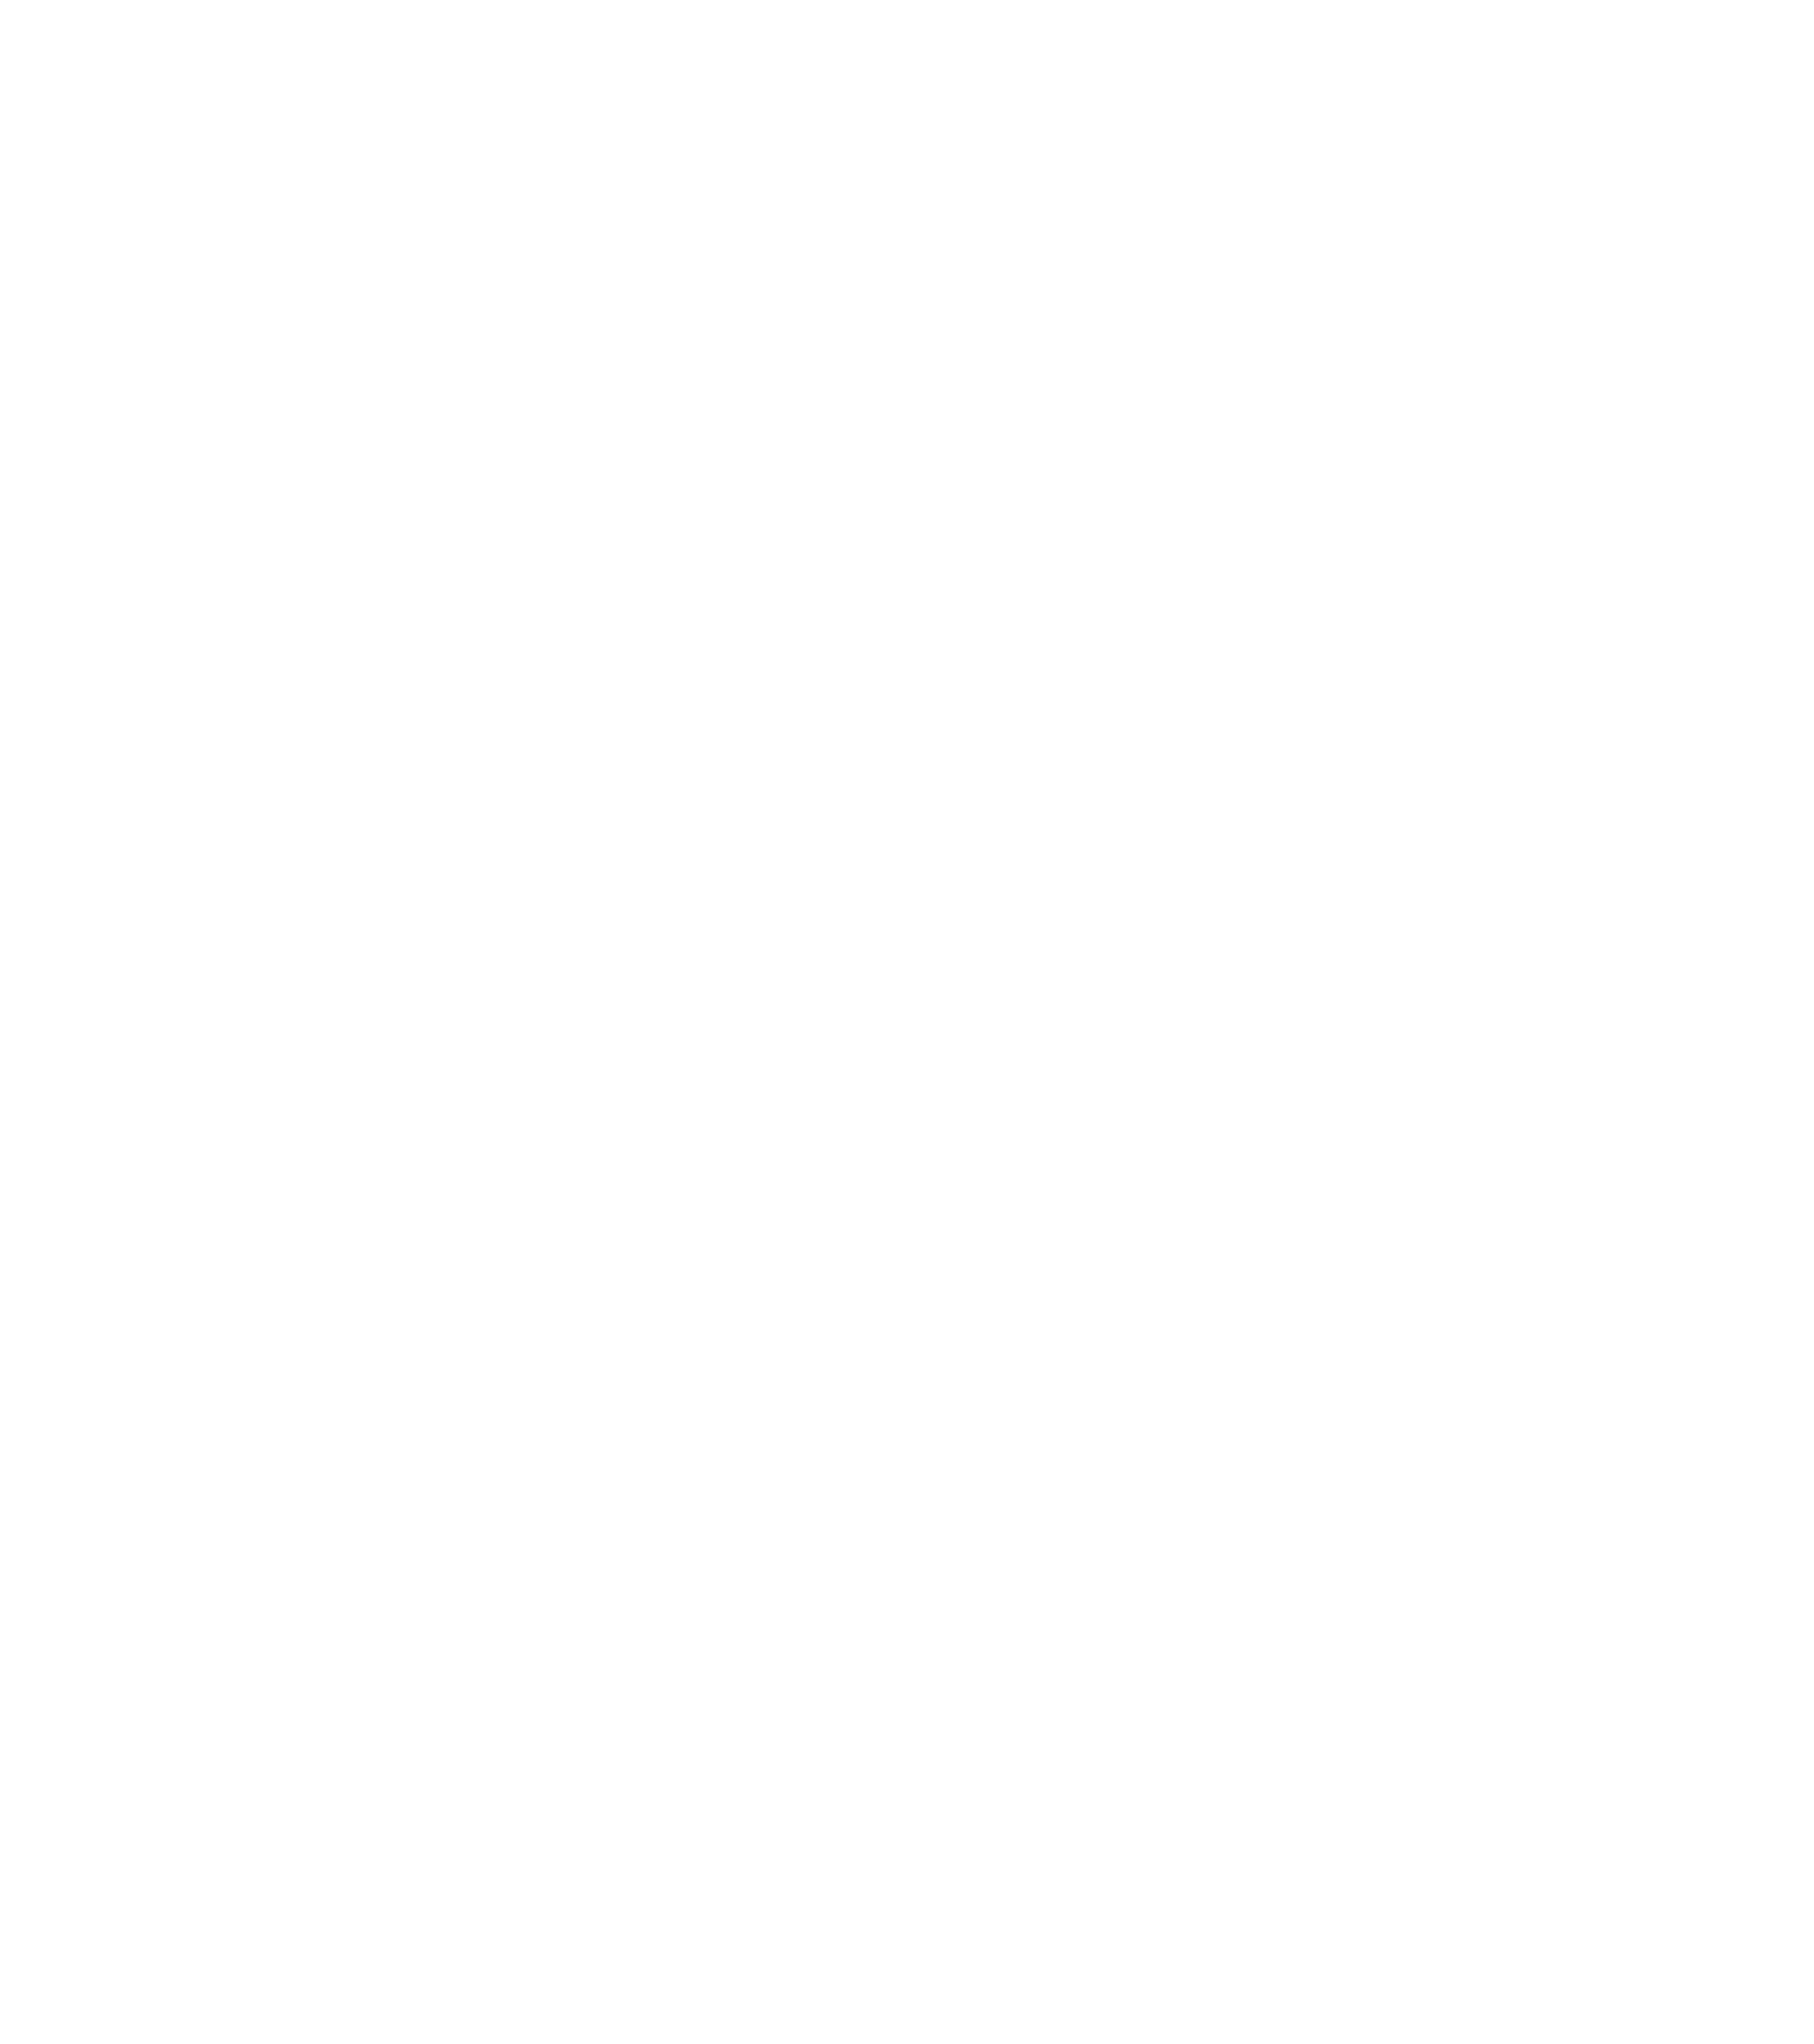 ميزون دي شوكلت - Maison De Chocolate